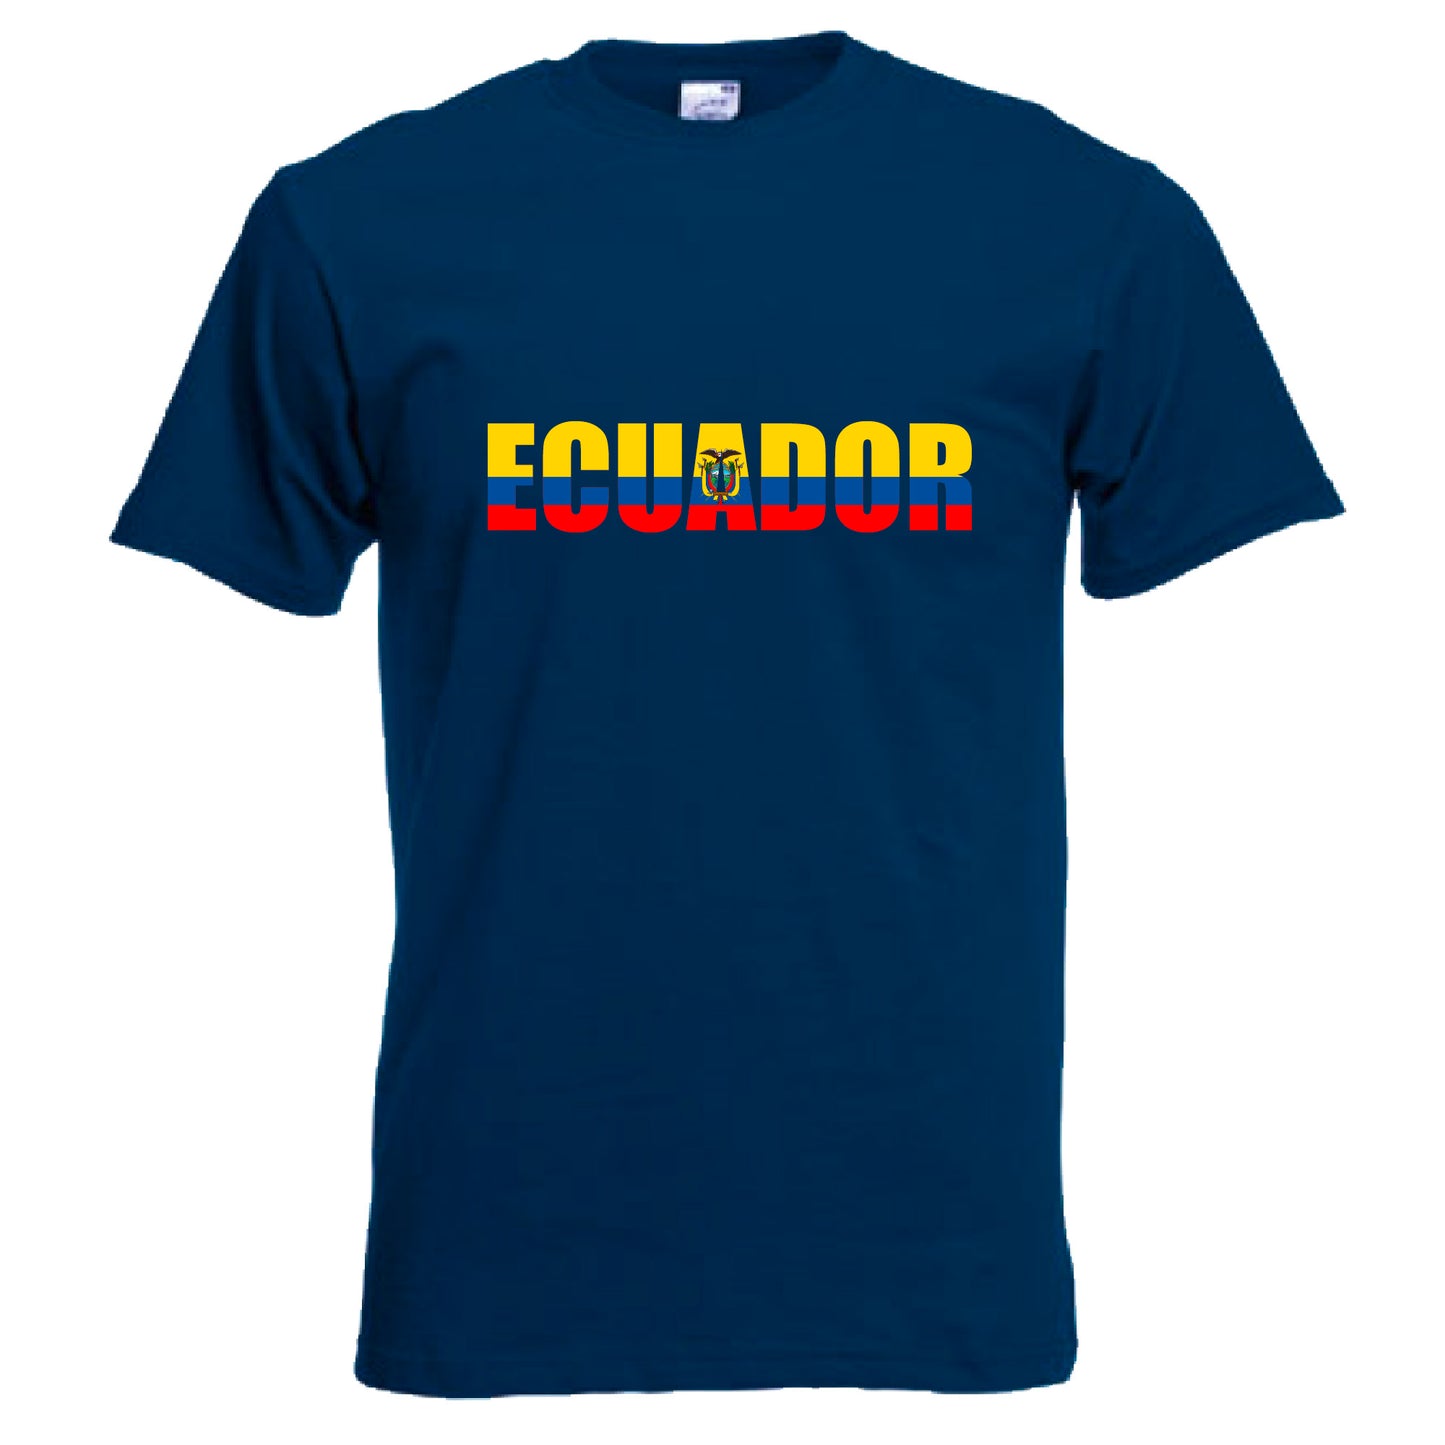 INDIGOS UG - T-Shirt Herren - Ecuador - Schriftzug - Fussball